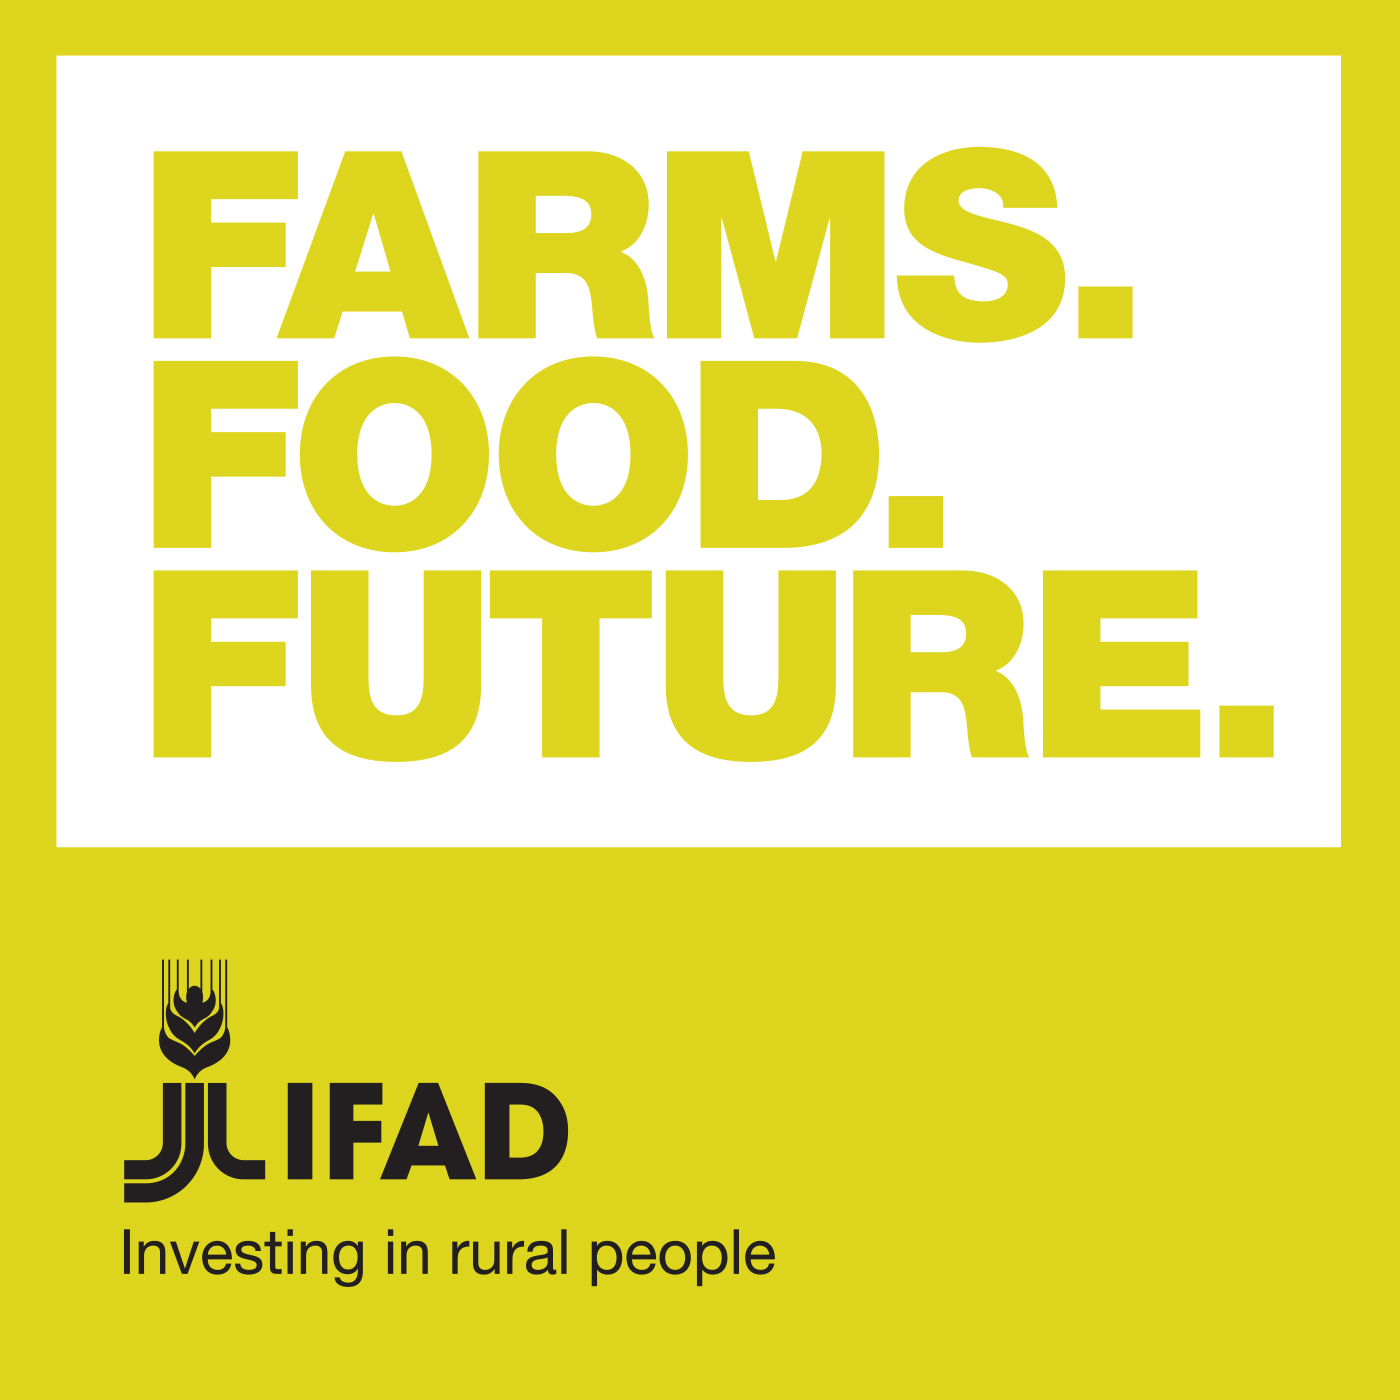 Farms. Food. Future.